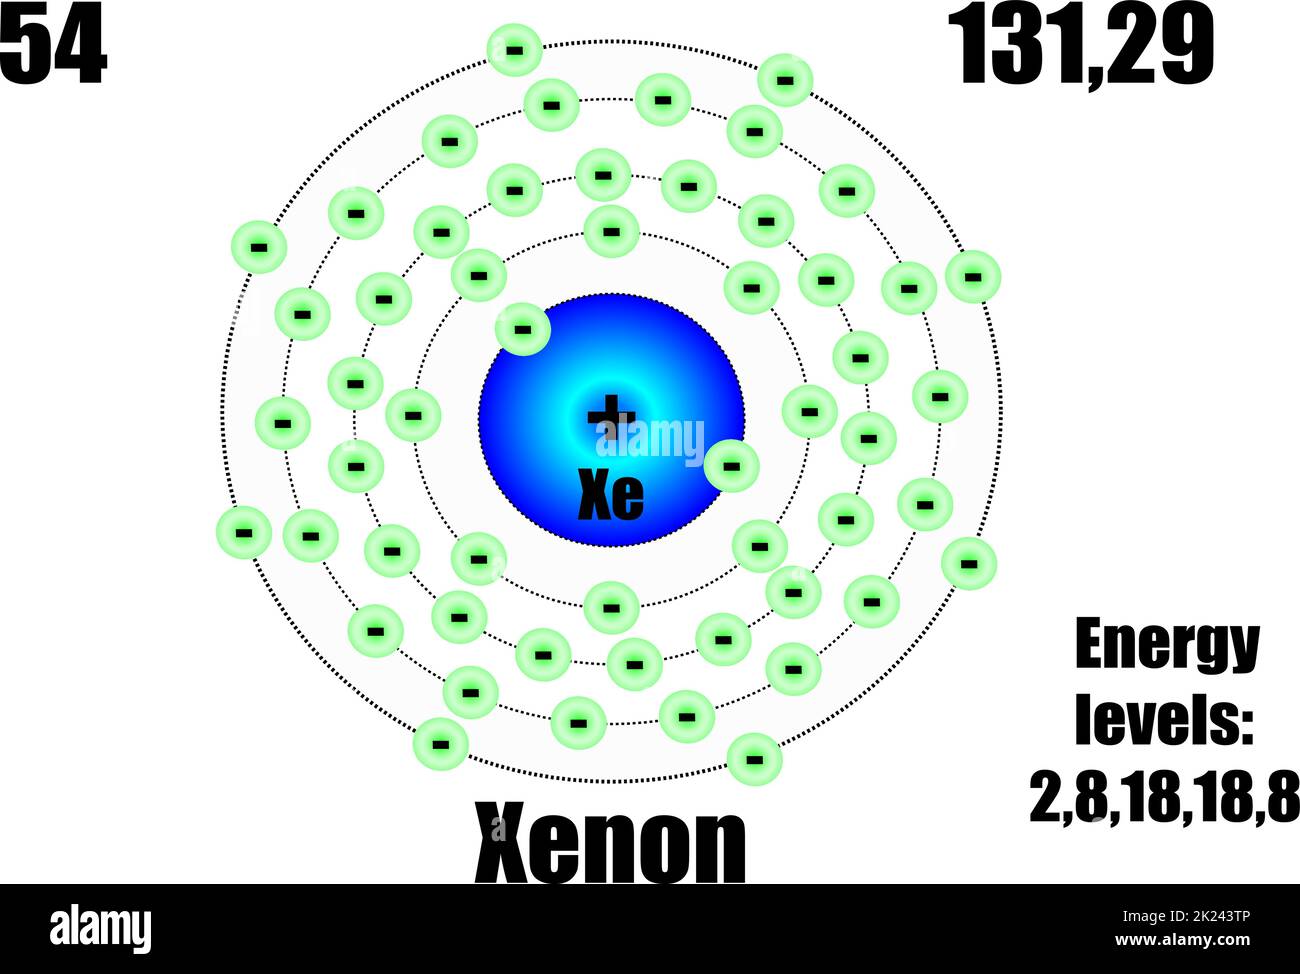 Atome de xénon, avec masse et niveaux d'énergie. Illustration vectorielle Illustration de Vecteur